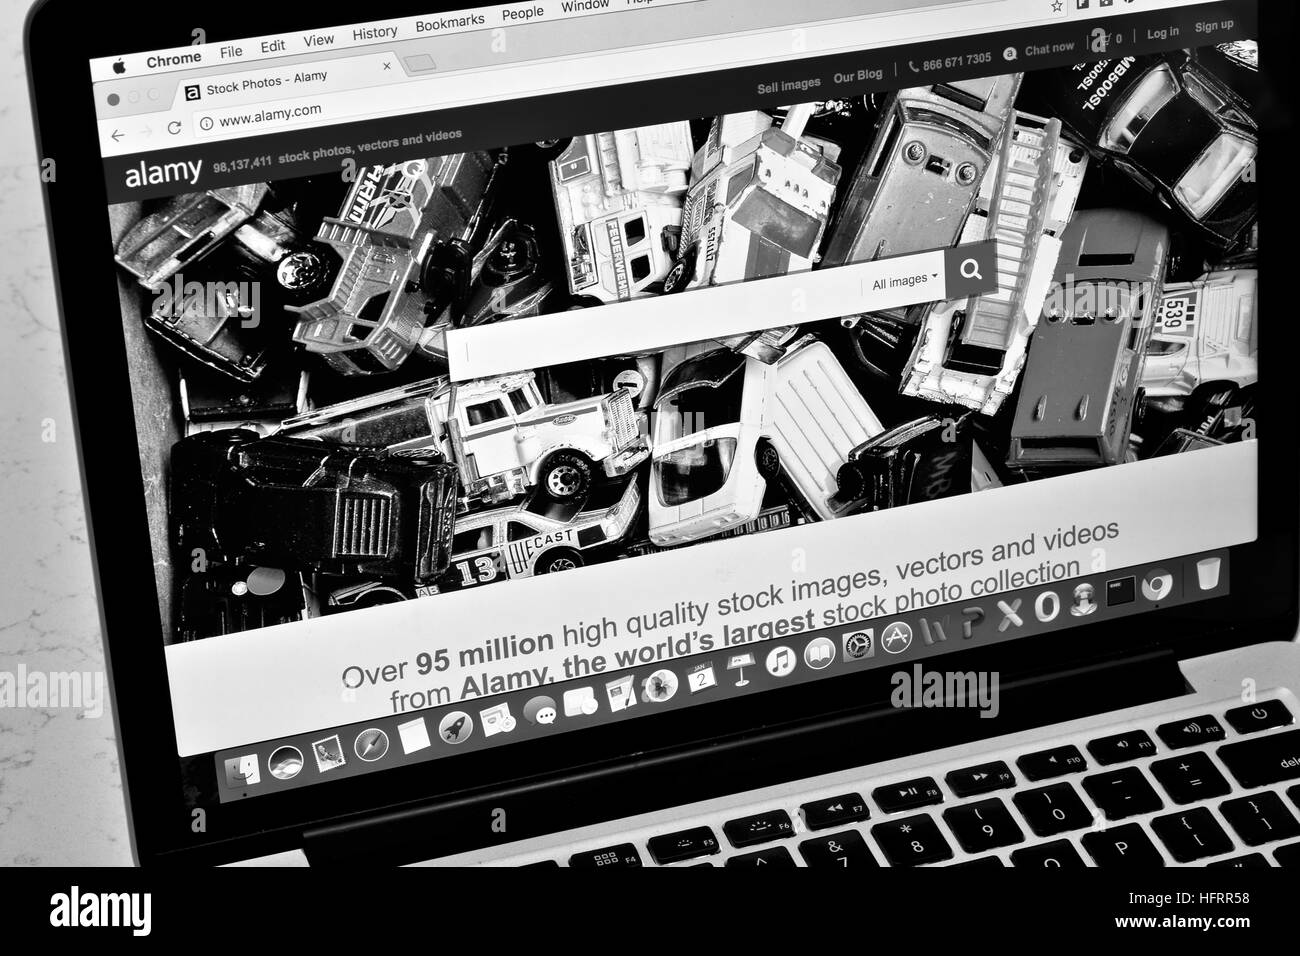 Un Apple Macbook Pro affiche le site Alamy stock photo en noir et blanc Banque D'Images